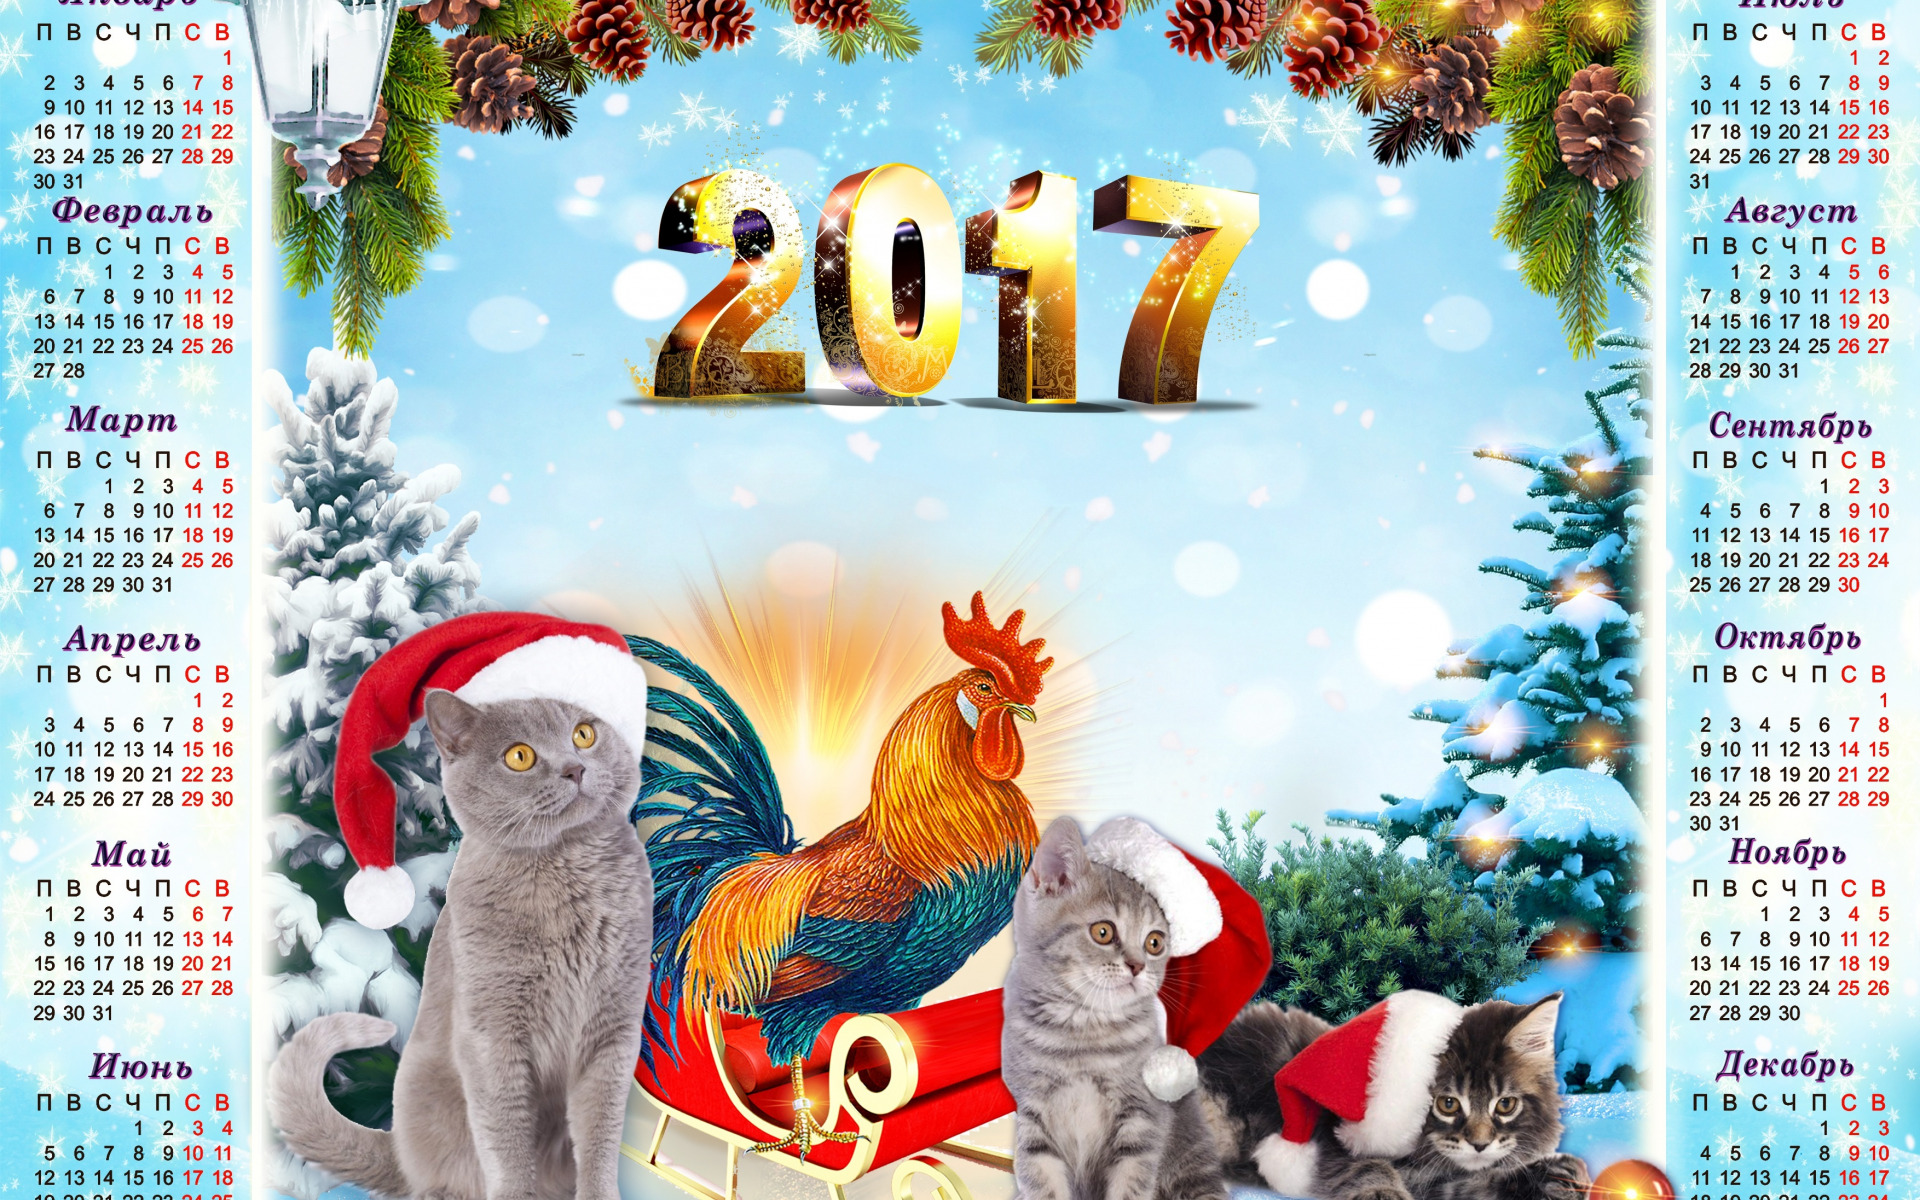 2017 год, фон, год петуха, серые, календарь, ели, голубой фон, котята